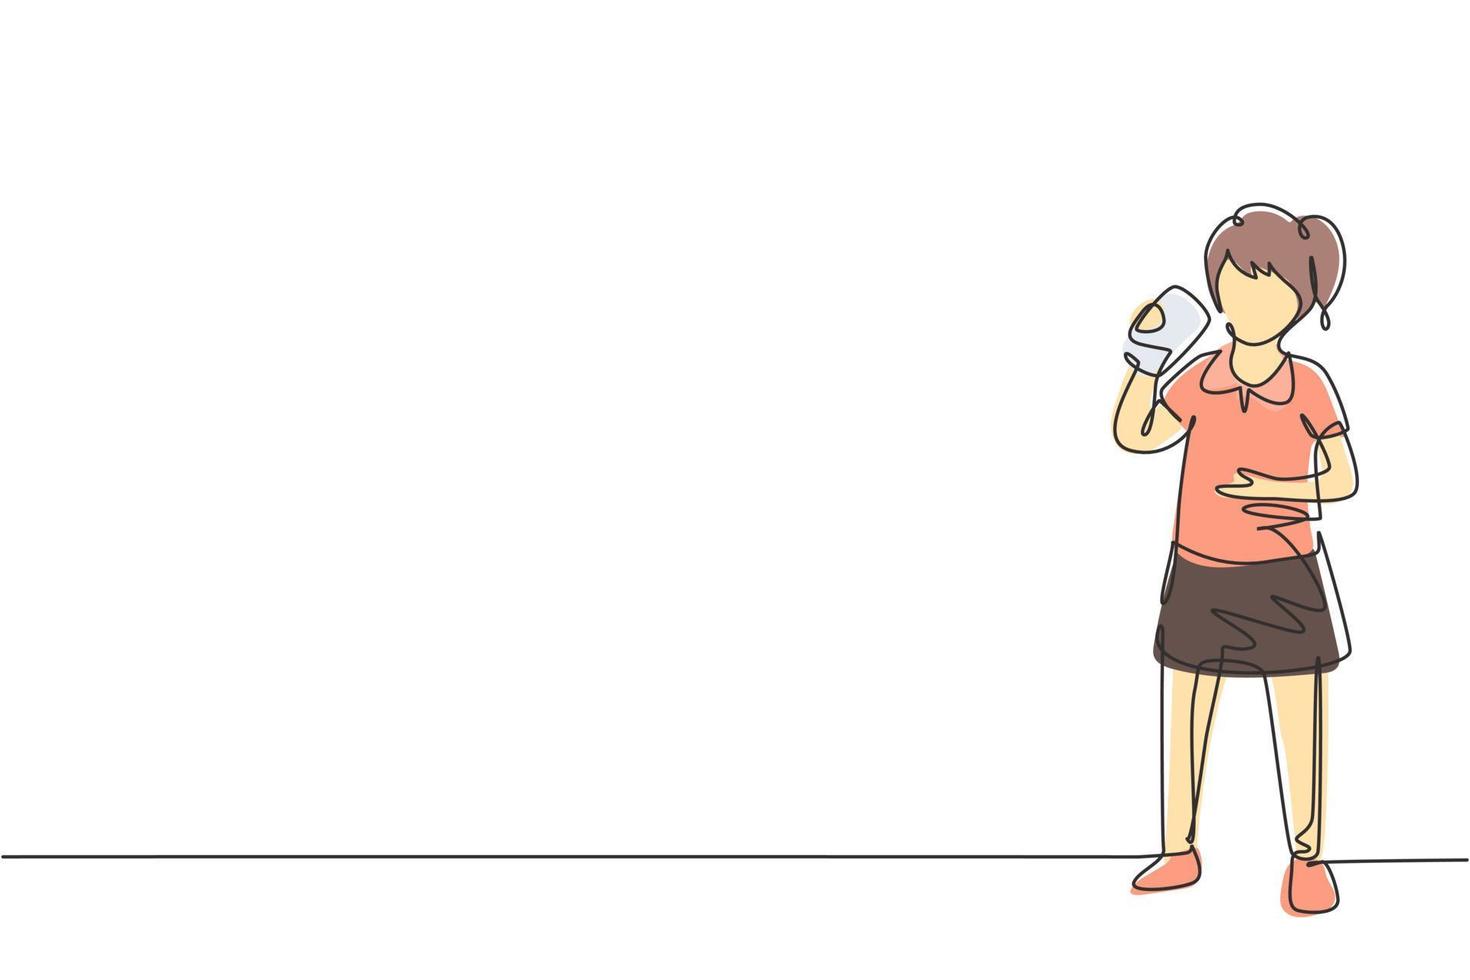 kontinuerlig en rad ritning flicka stående medan dricker mjölk i en flaska för att uppfylla hennes kropps näring. hälsosam livsstil koncept för barn. enda rad rita design vektorgrafisk illustration vektor